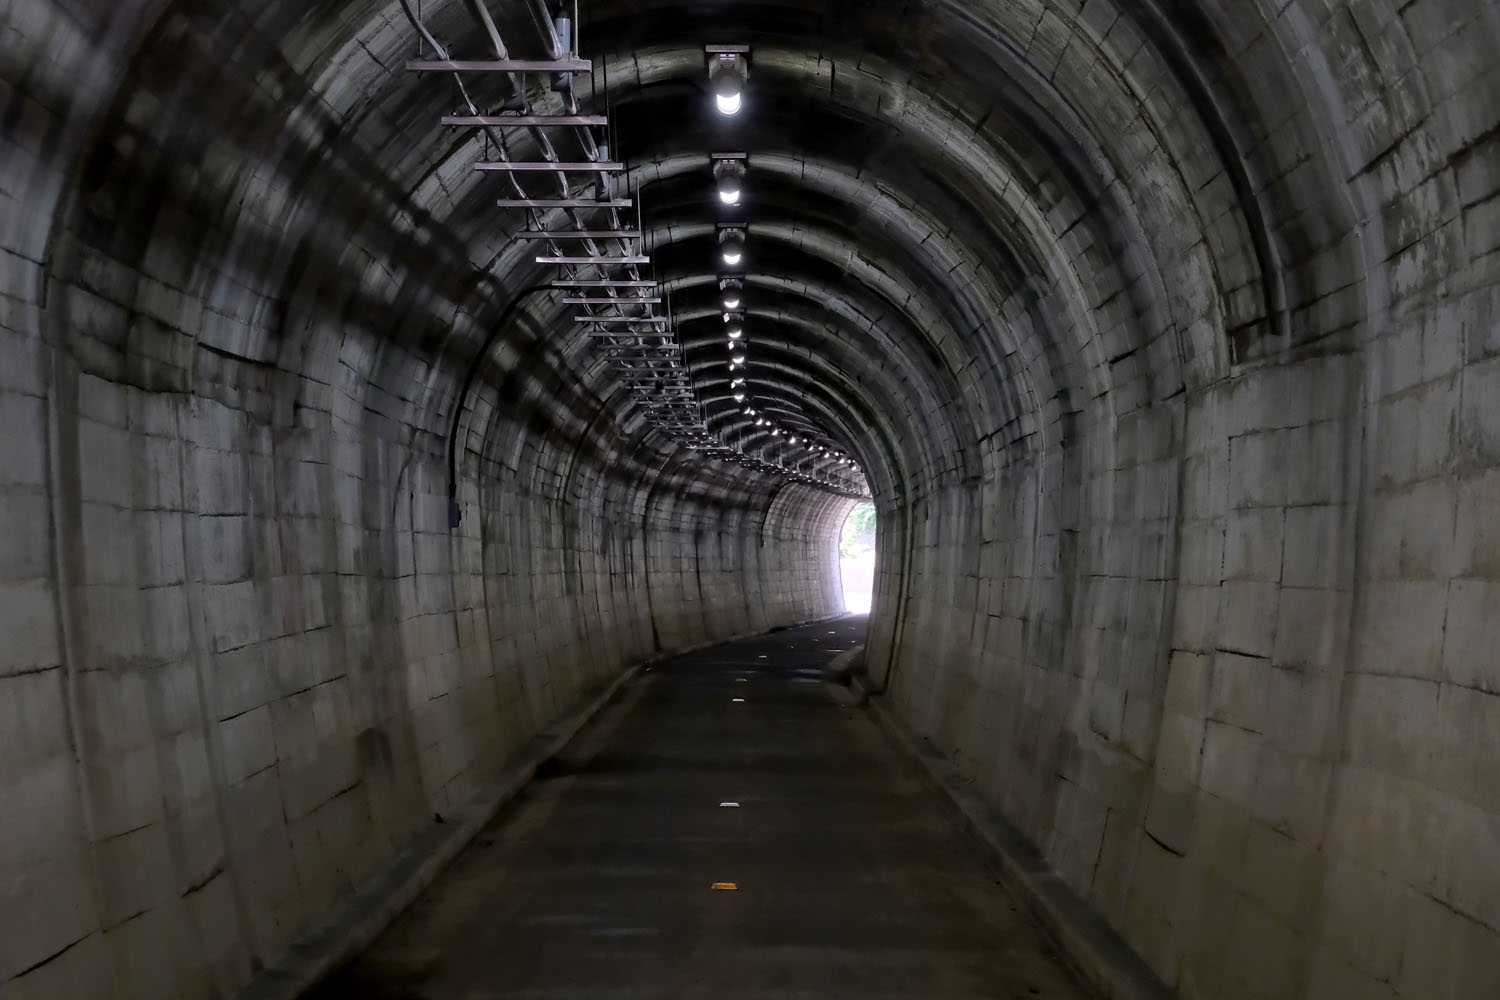 出口部分がカーブする赤堀トンネルの内部。コンクリートの壁面は以後のトンネルも同じである。先ほどから気になるのはケーブル類。おそらくトンネル内の照明などの電源ケーブルだろう。